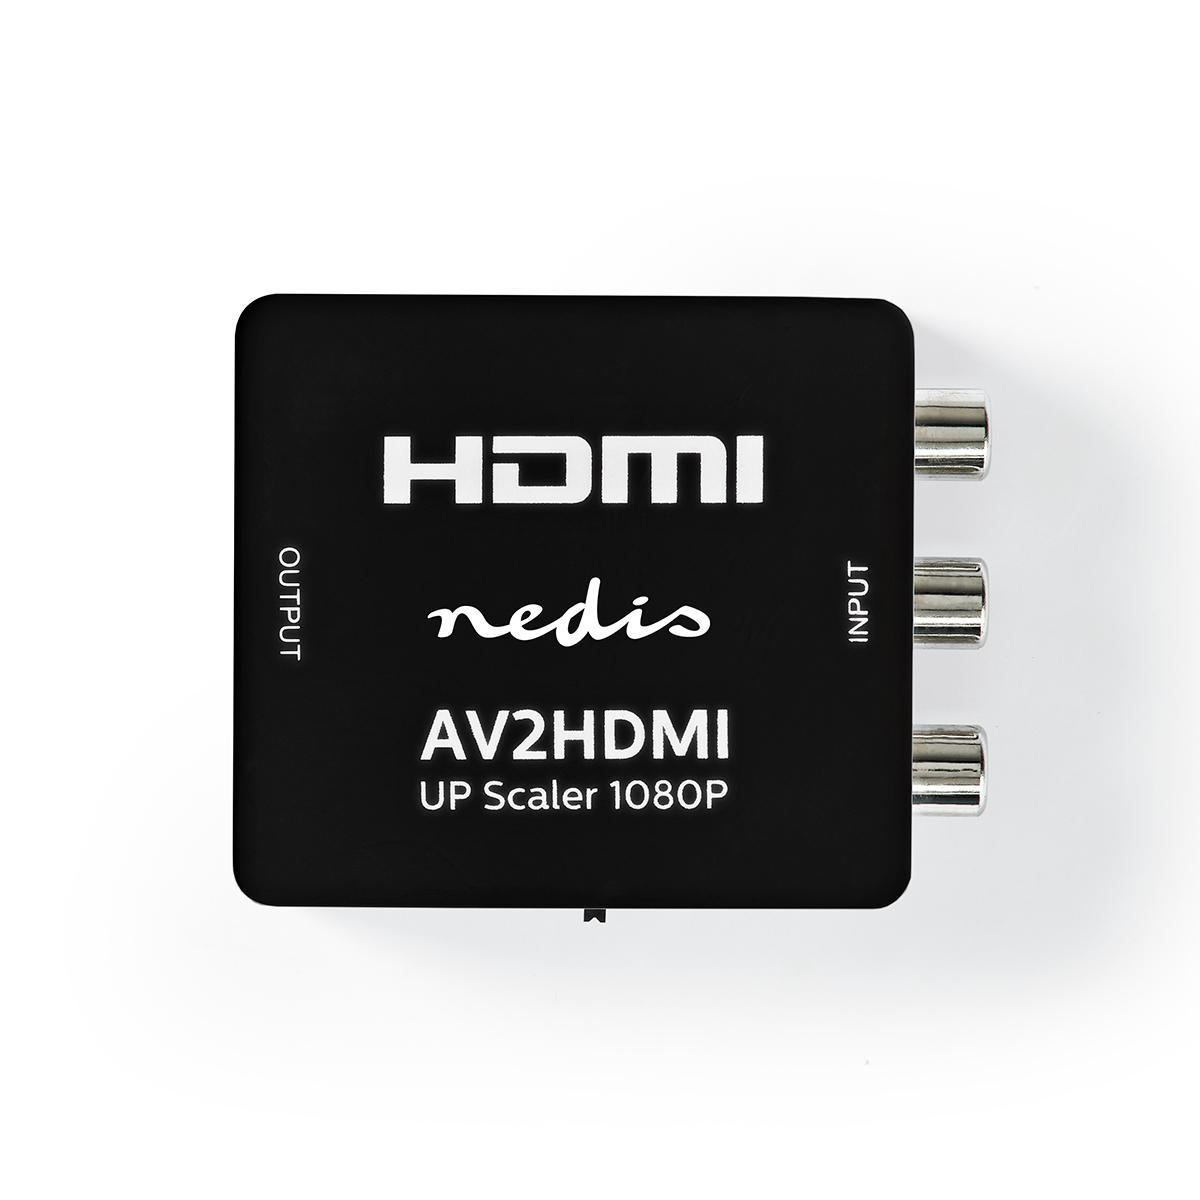 Converter NEDIS HDMI VCON3456AT